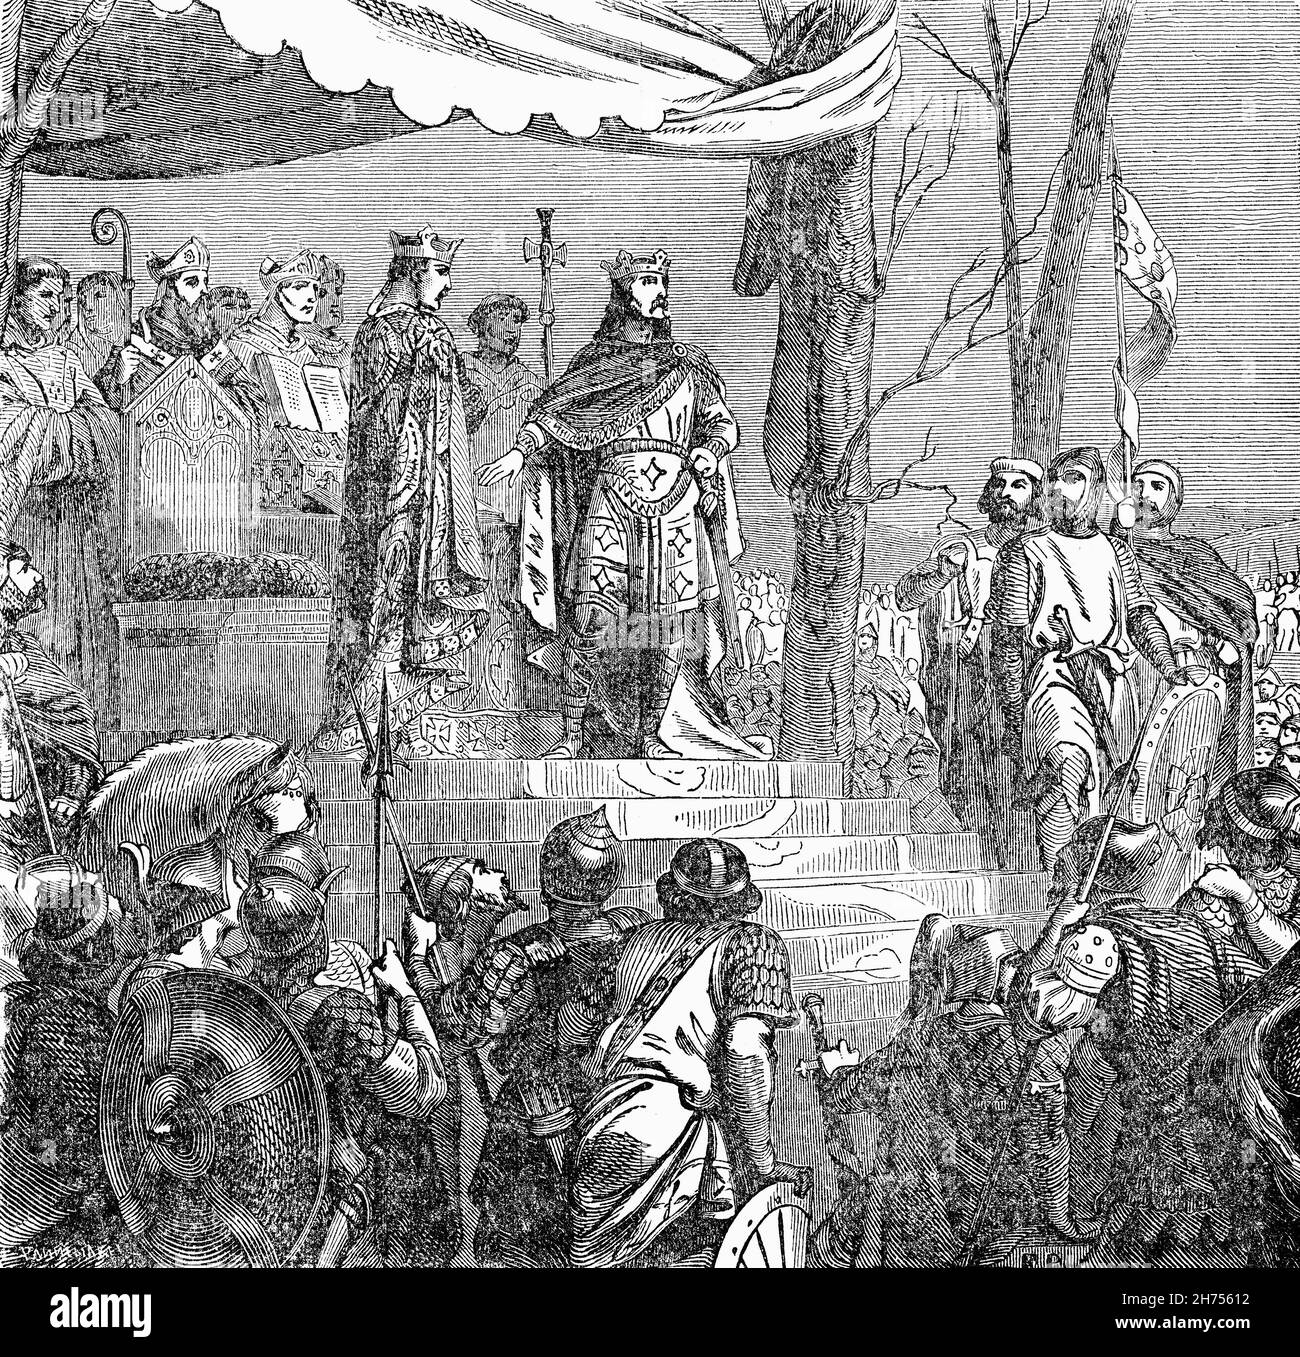 Eine Illustration der Unterzeichnung des Vertrags von Verdun am 10. August 843 aus dem späten 19th. Jahrhundert, dem ersten der Verträge, die das karolingische Reich unter den drei überlebenden Söhnen Ludwigs des Frommen, des Sohnes Karls des Großen, in drei Königreiche teilten. Der in Verdun-sur-Meuse unterzeichnete Vertrag, der von den drei Brüdern Lothair, Ludwig dem Deutschen und Karl dem Kahlen unterzeichnet wurde, beendete den dreijährigen karolingischen Bürgerkrieg. Stockfoto